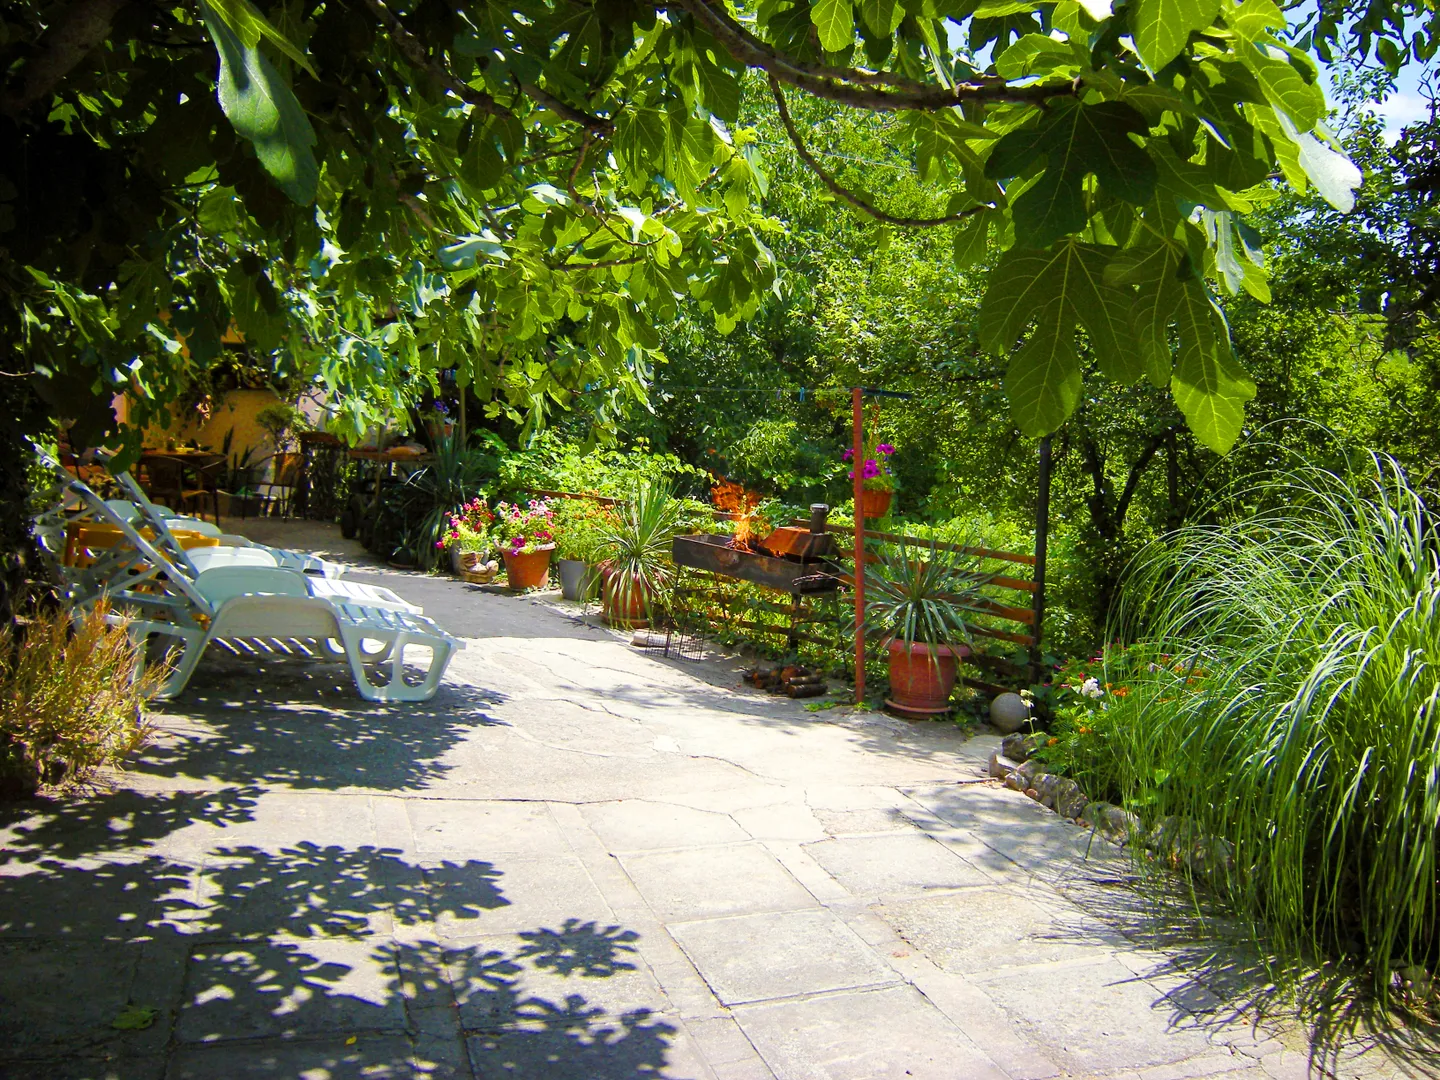 Большой персональный двор в зелени, с шезлонгами в тени инжира и проф.мангалом